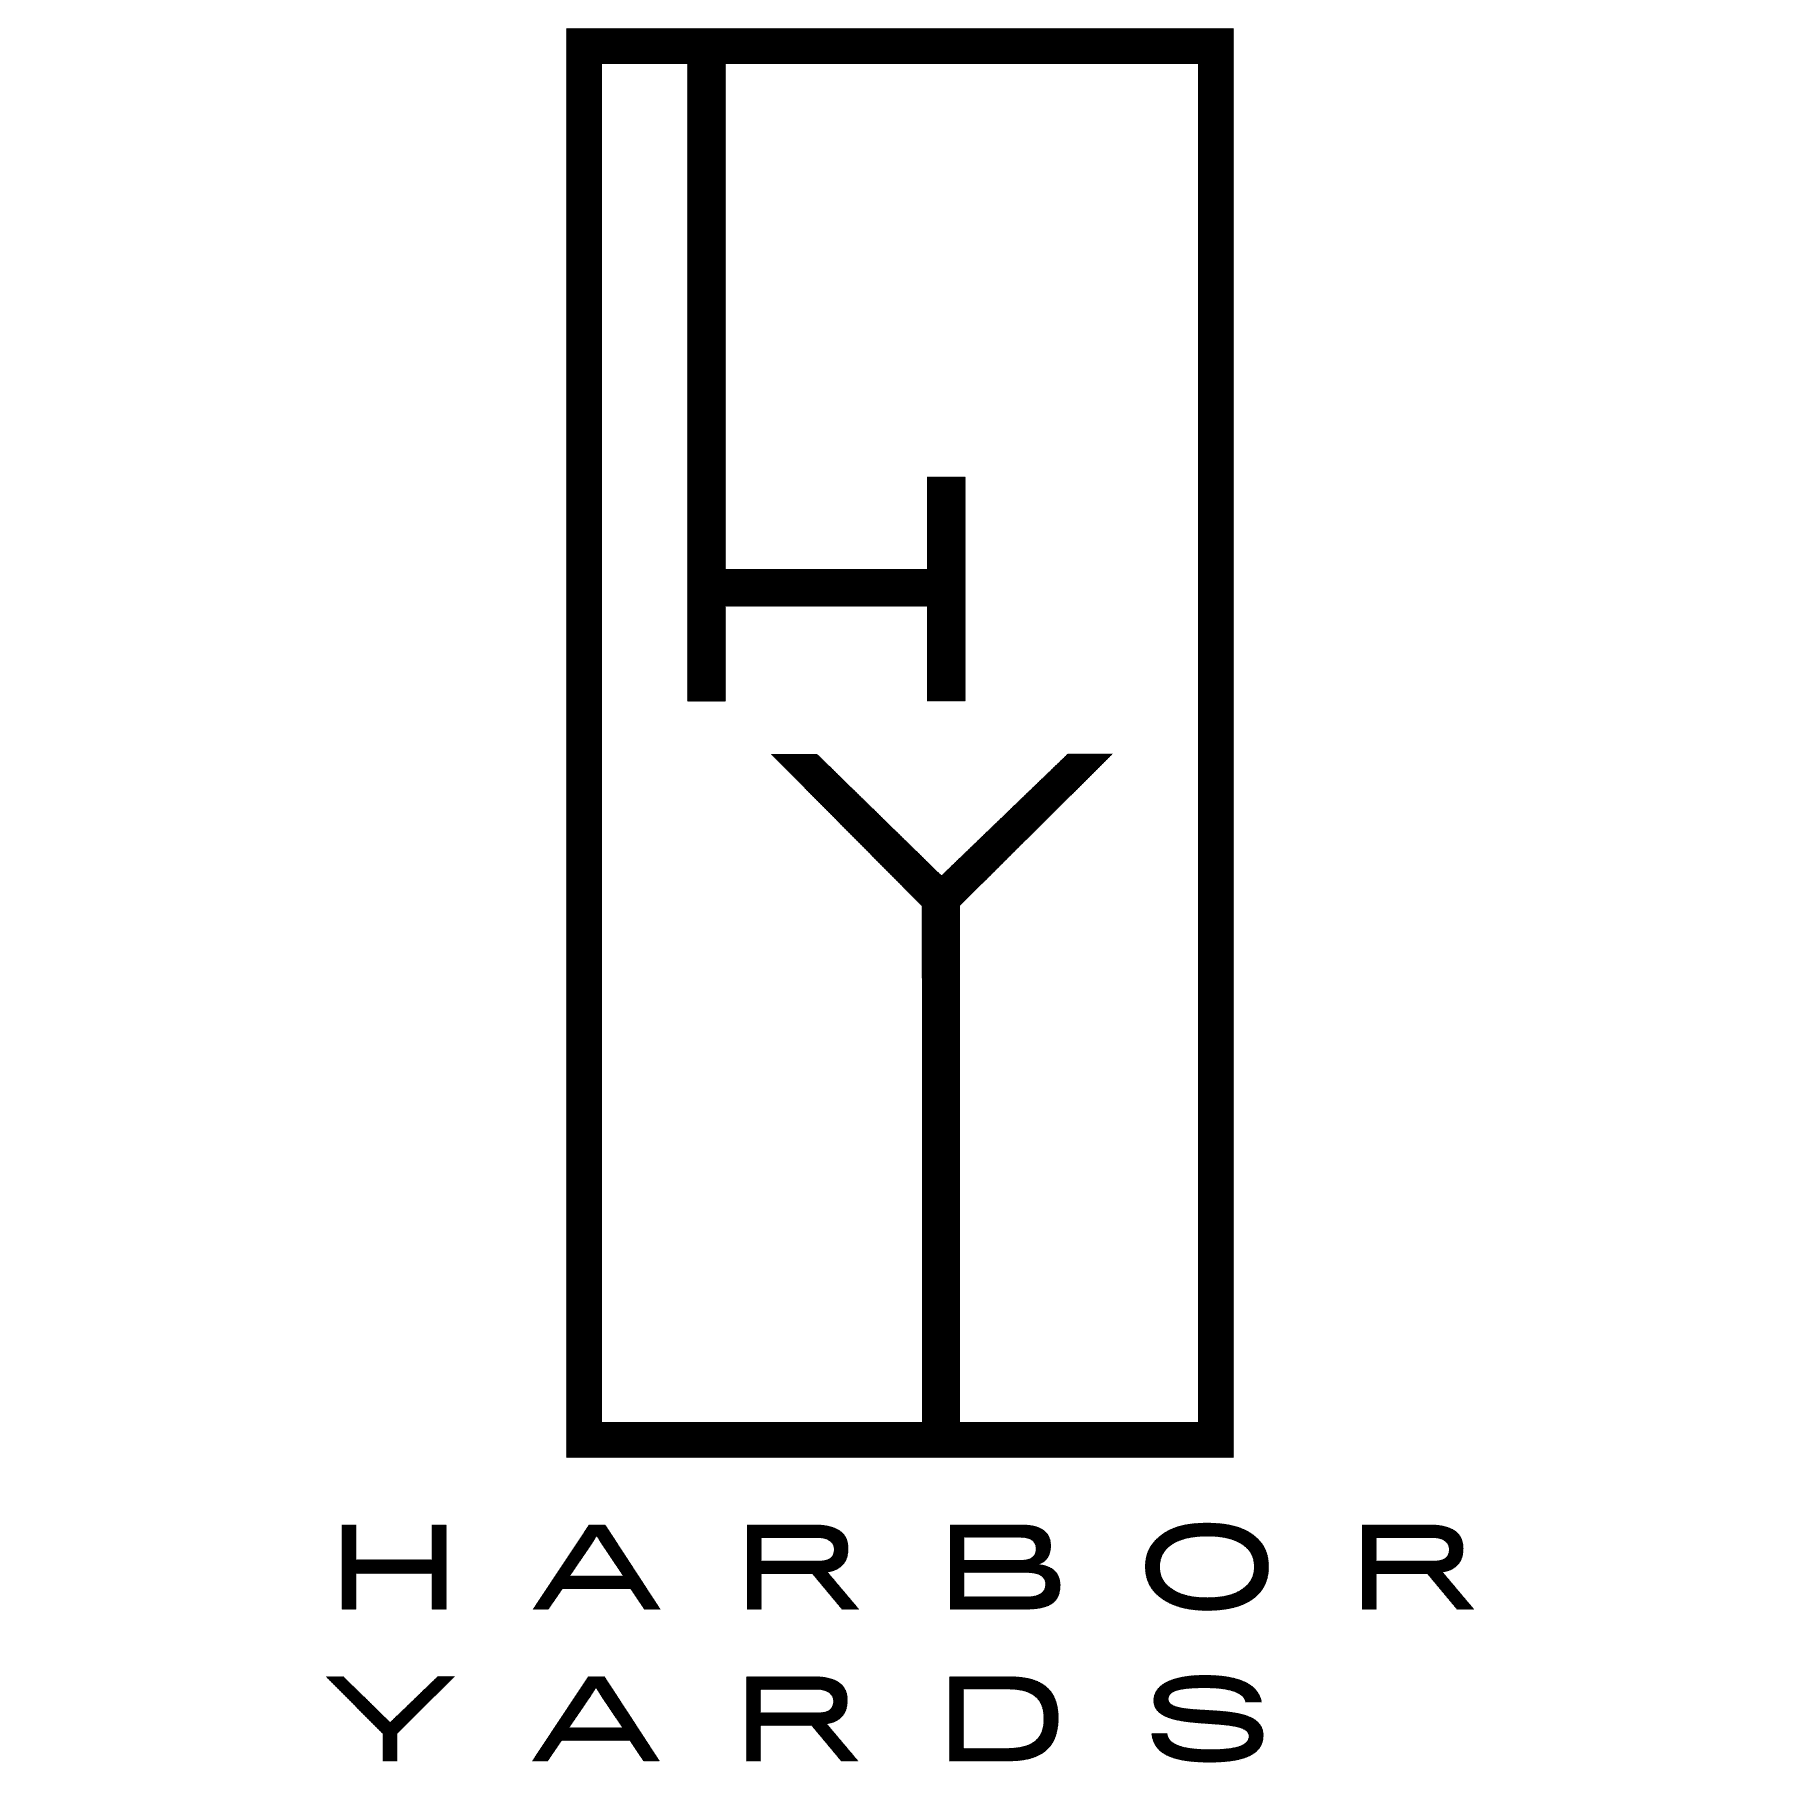 Harbor Yards logo